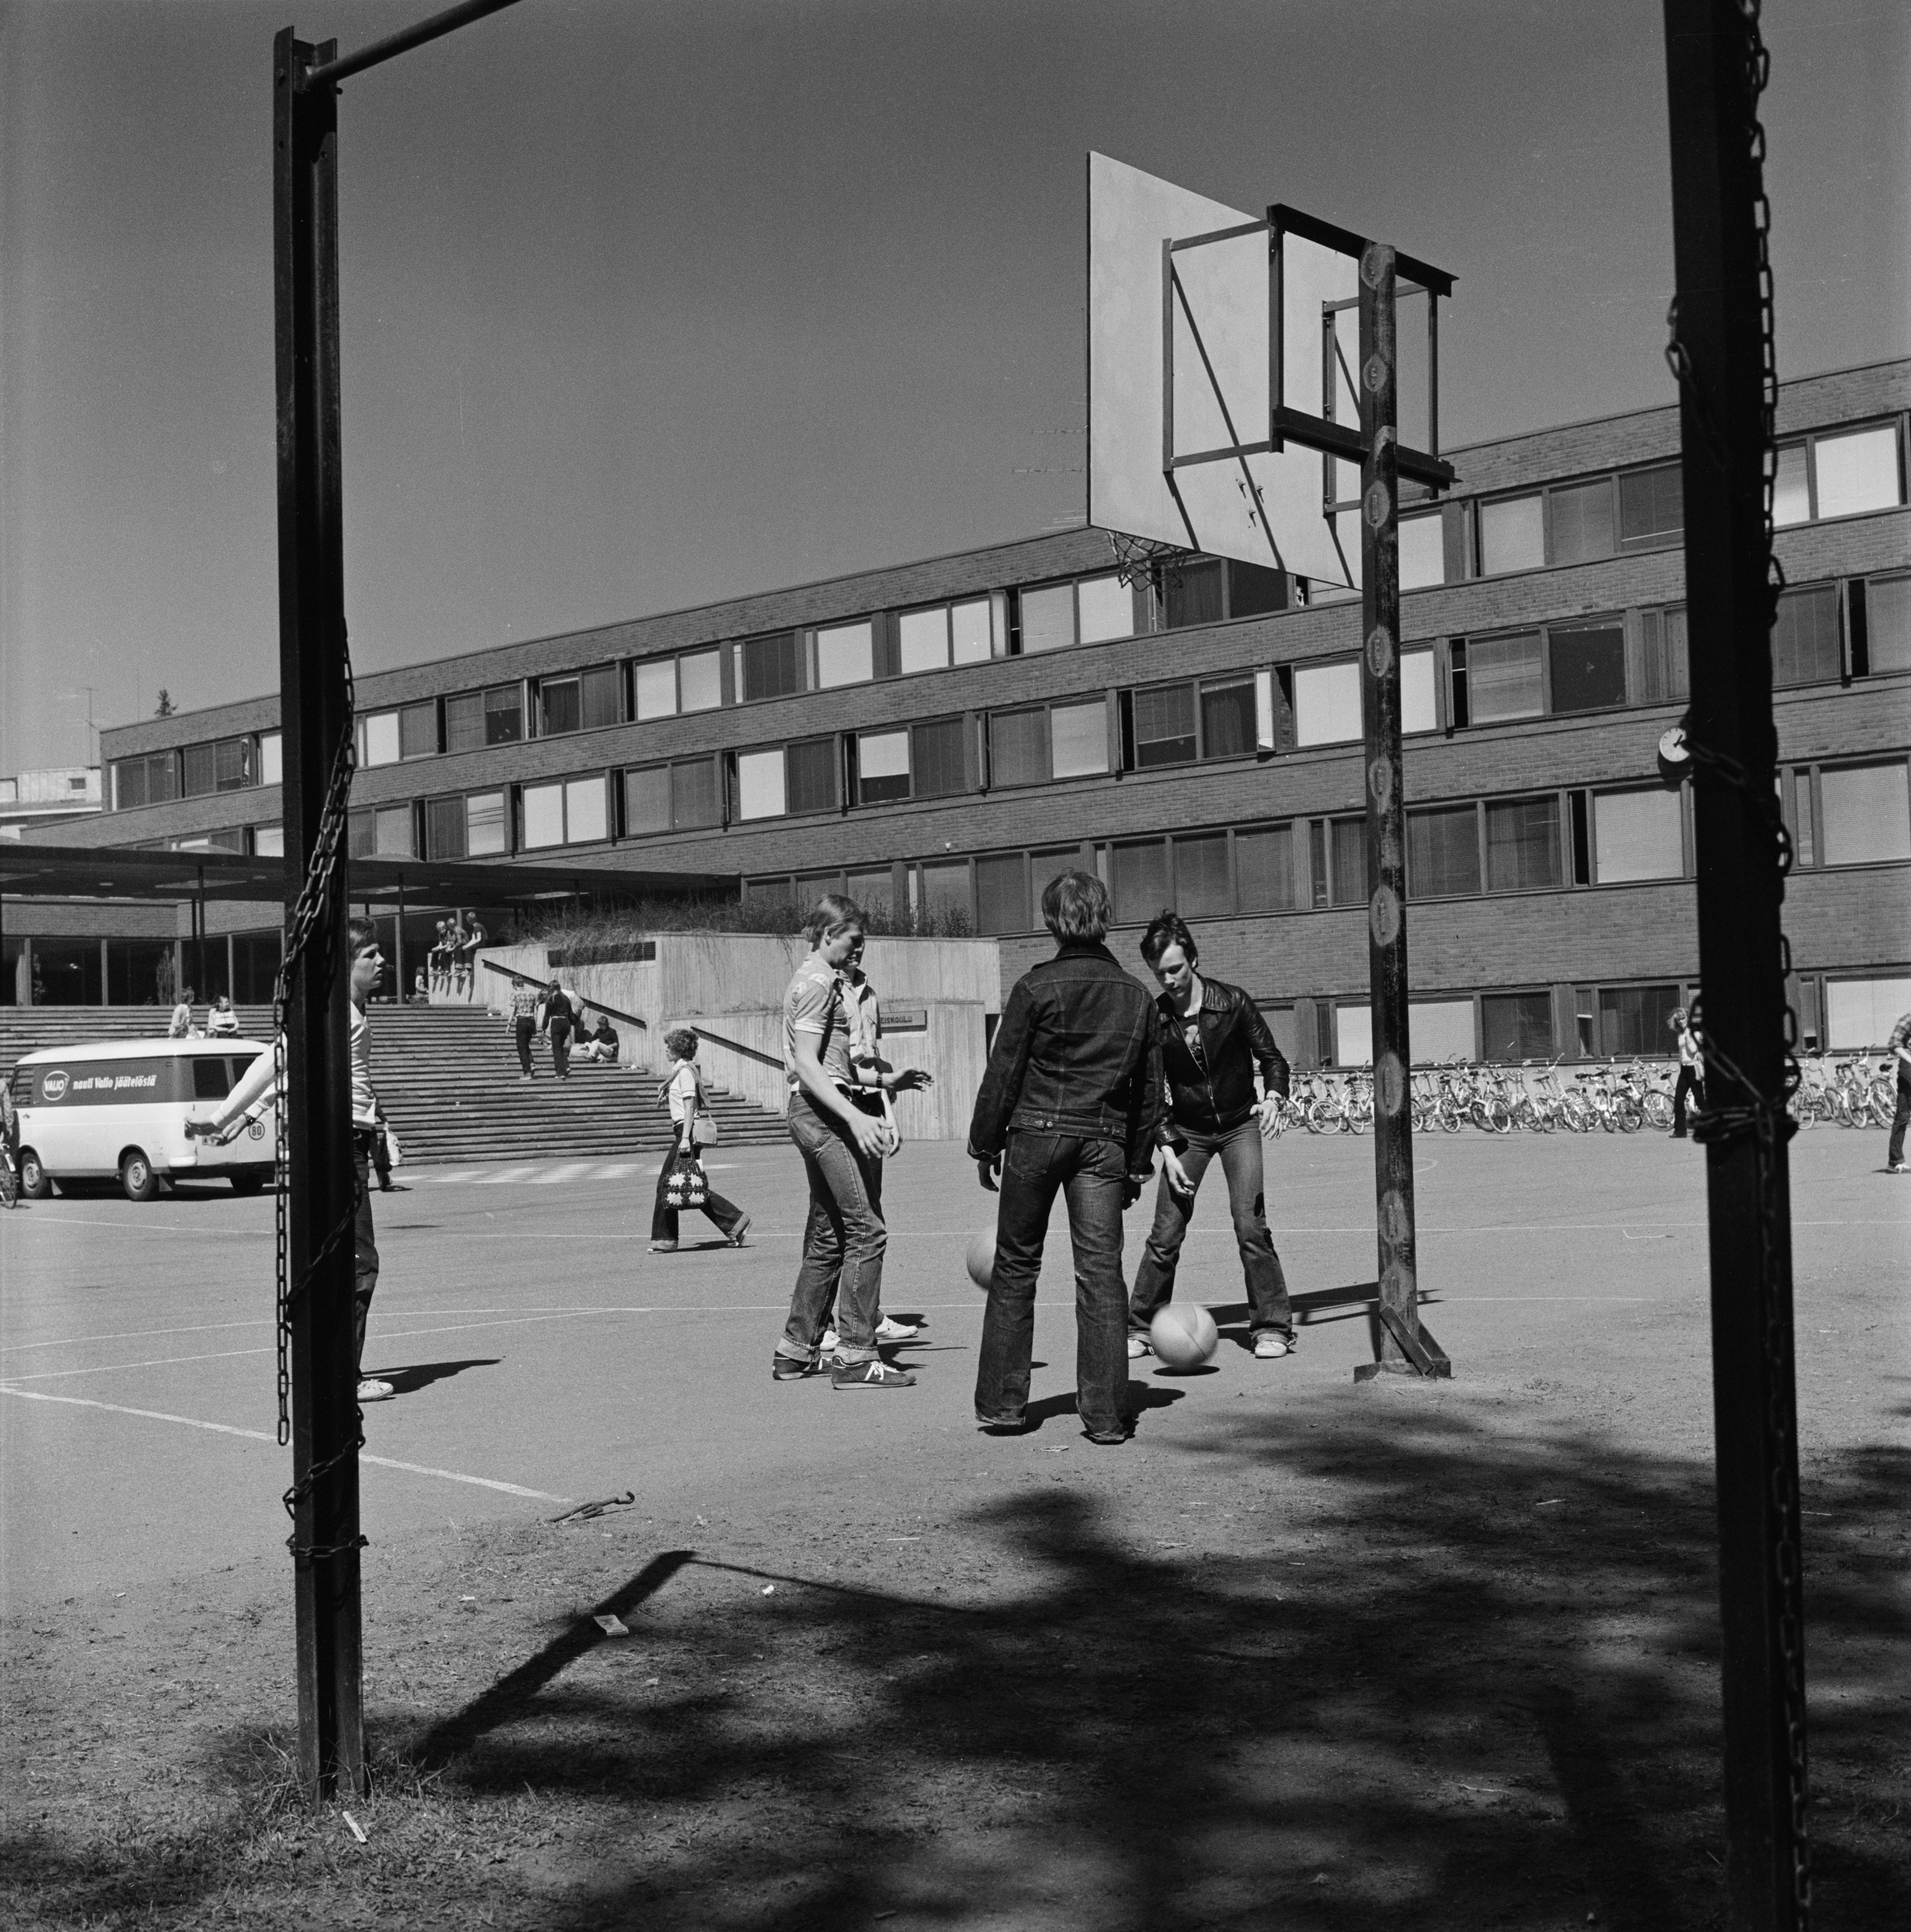 Poikia pelaamassa koripalloa Lauttasaaren yhteiskoulun pihalla,  Isokaari 19.